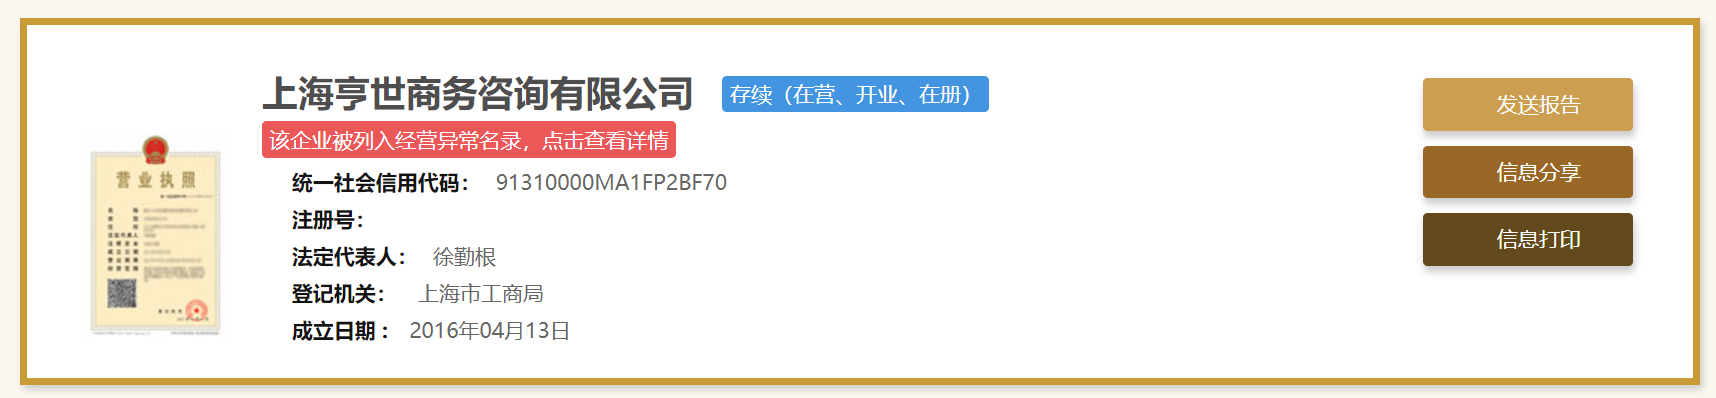 上海亨世商务咨询有限公司被列入经营异常名录，徐勤根担任法定代表人。 上海市市场监督管理局官网截图